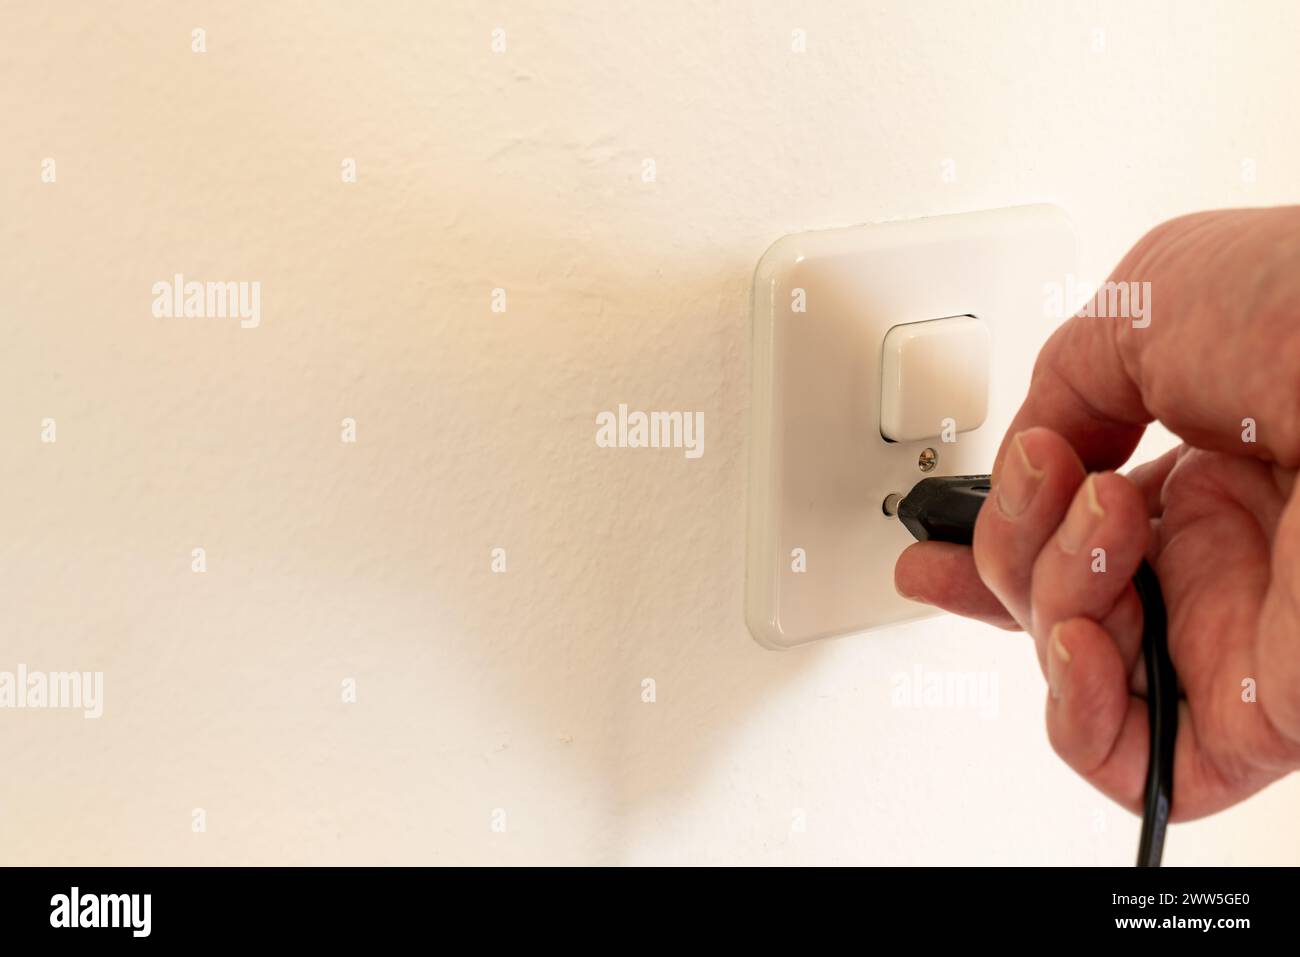 Collegare una spina di alimentazione a una presa di corrente a muro. La presa di corrente è combinata con un interruttore per accendere la luce. Foto Stock